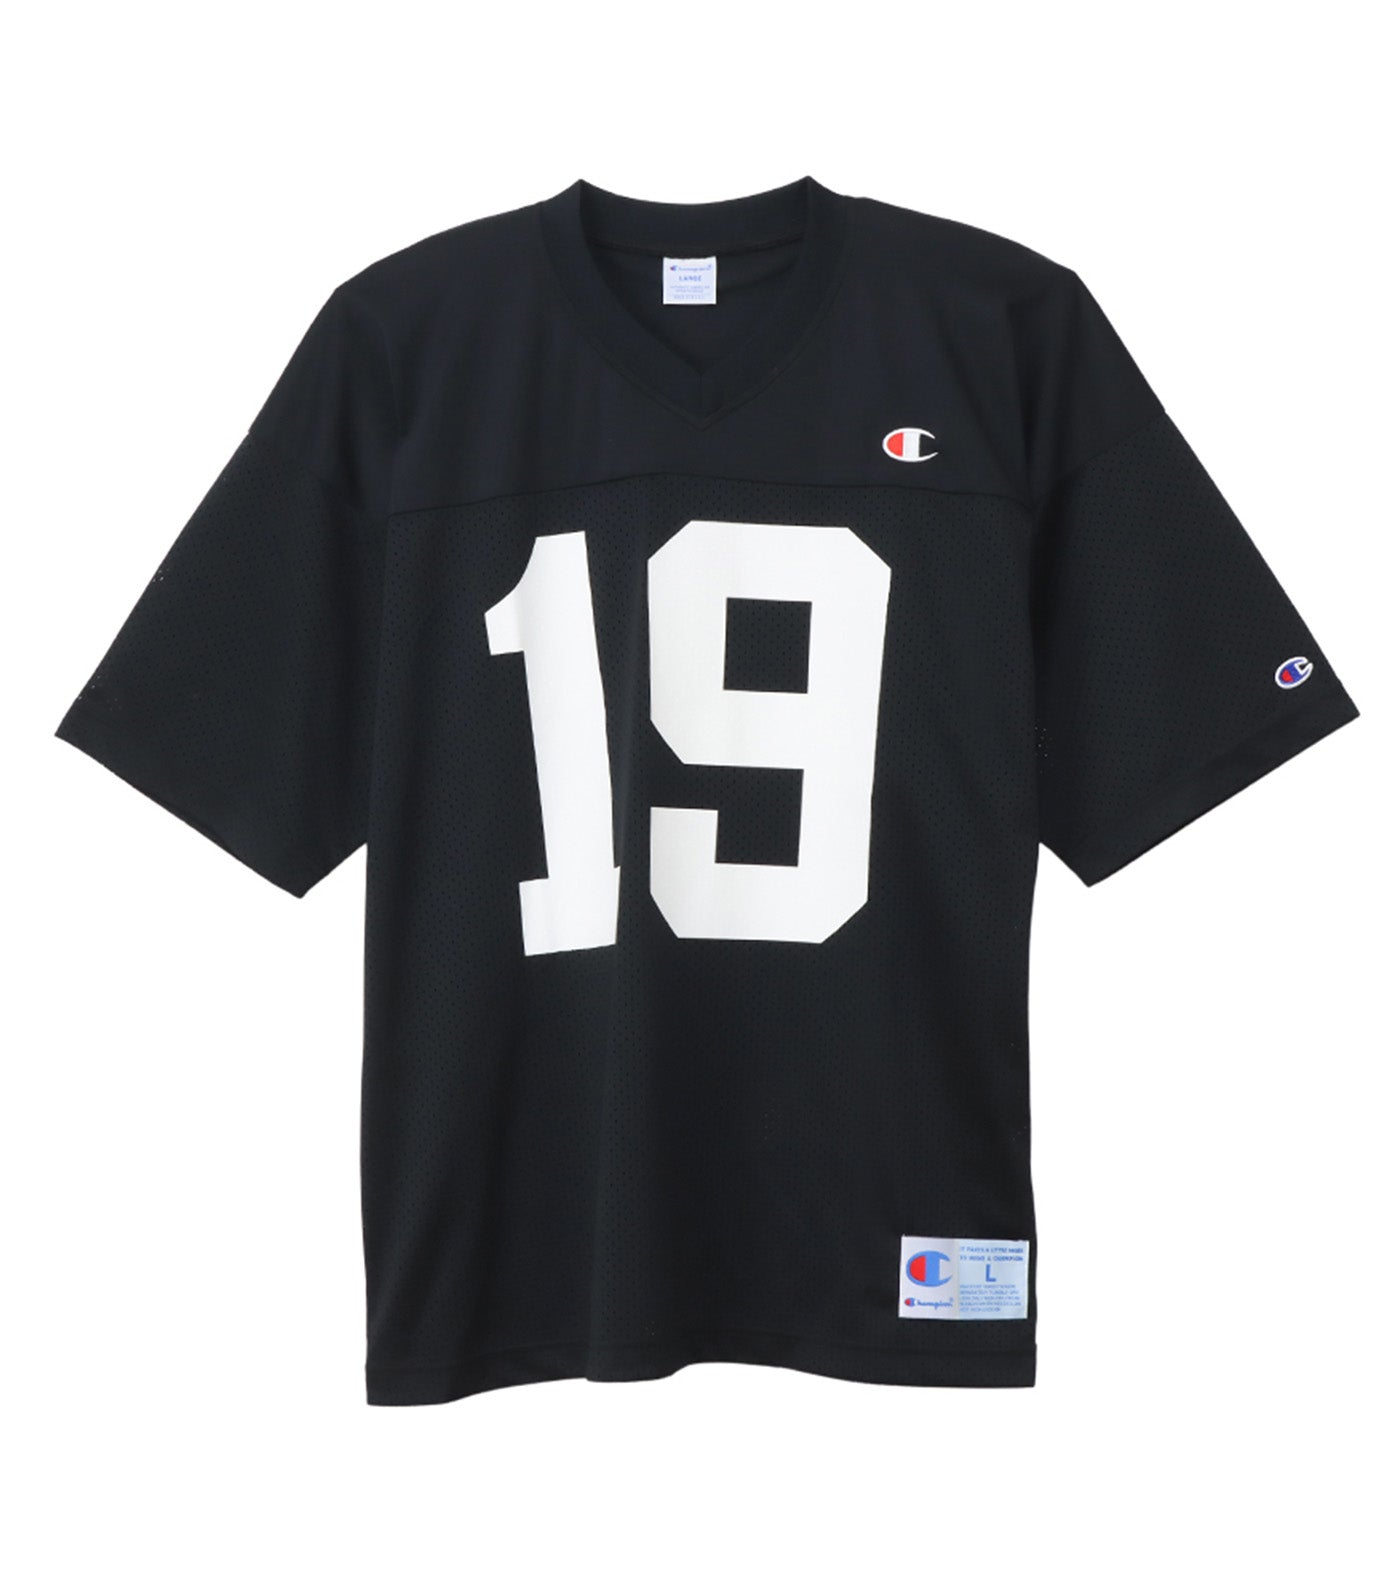 Japan Line Short Sleeve Mesh T-Shirt Black